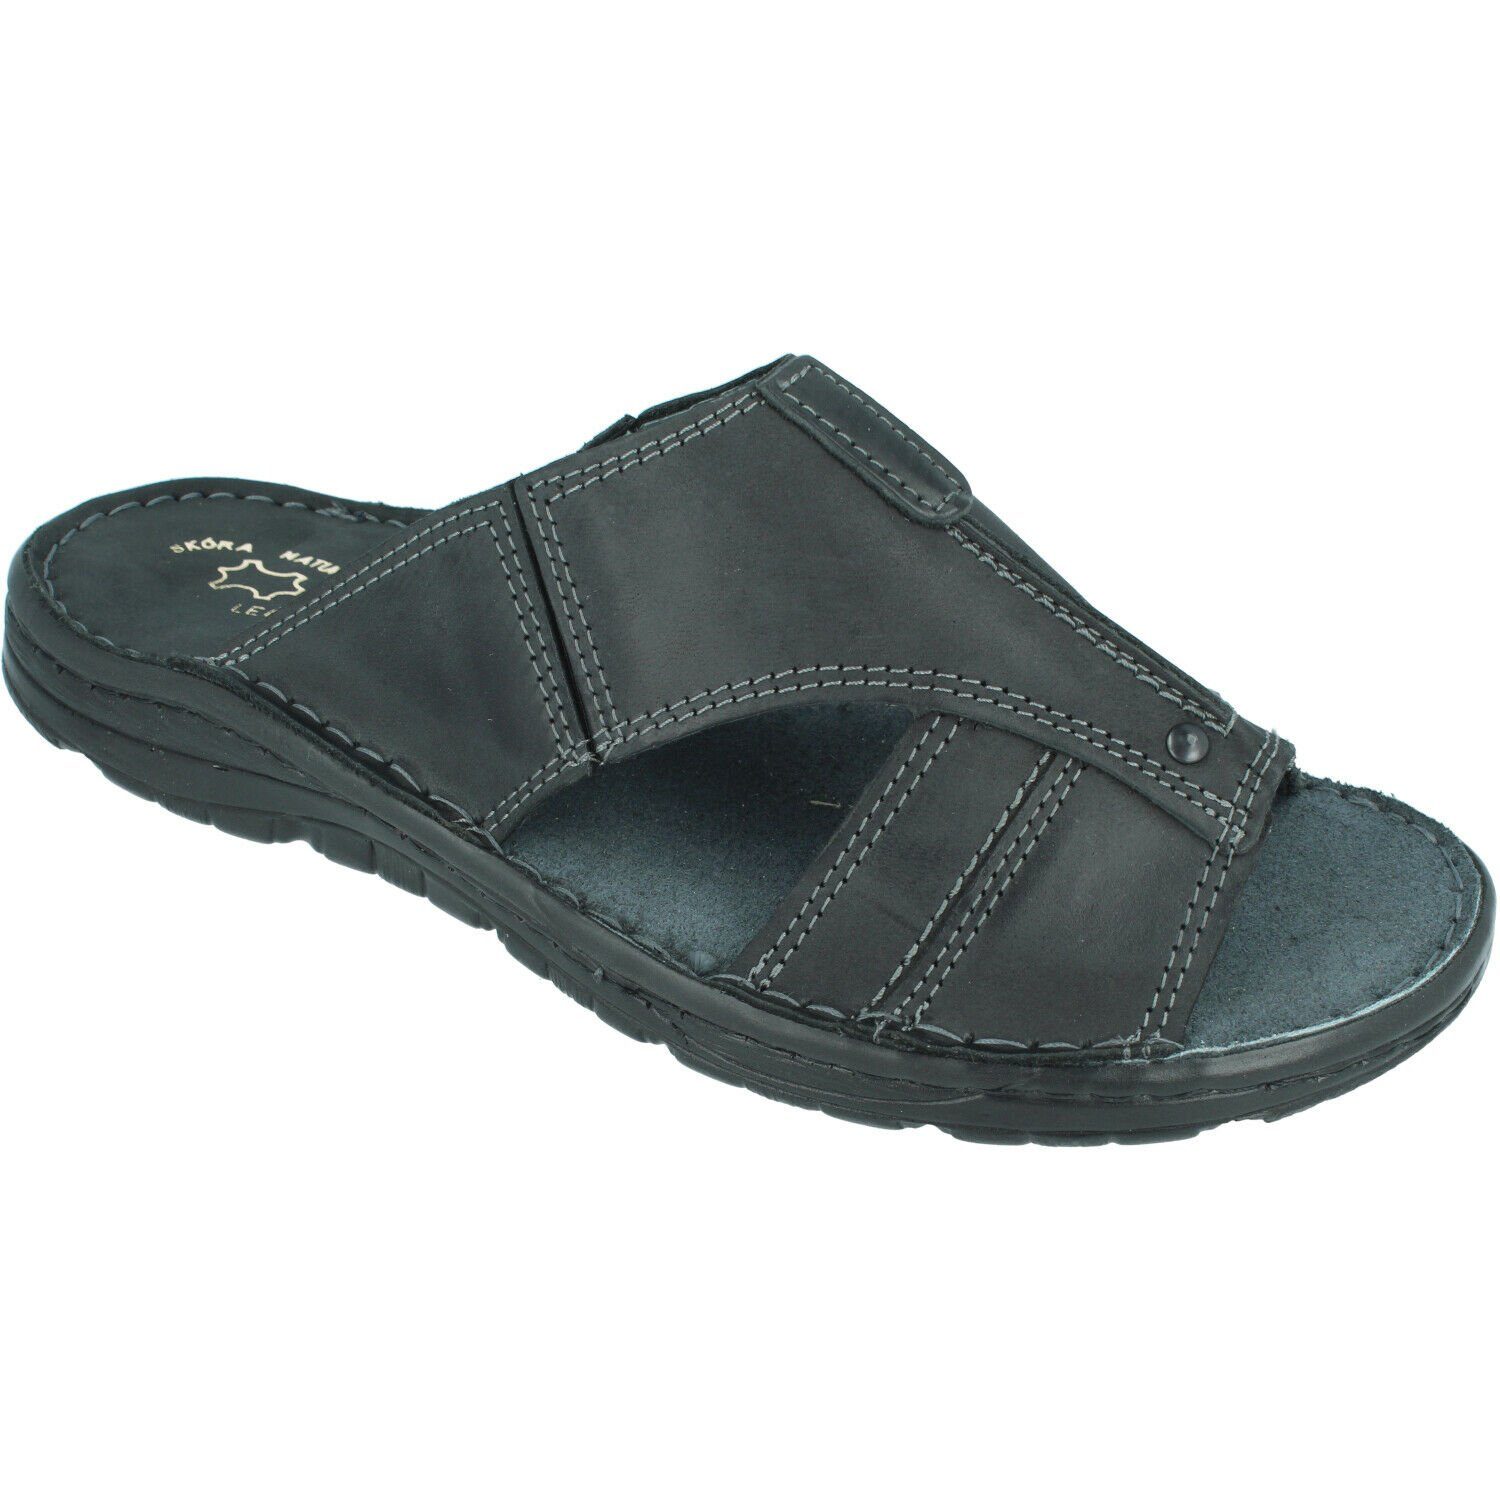 Schuhe Sandalen HausSchuhe-Design Sommer Leder-Sandalen für Herren Sandale